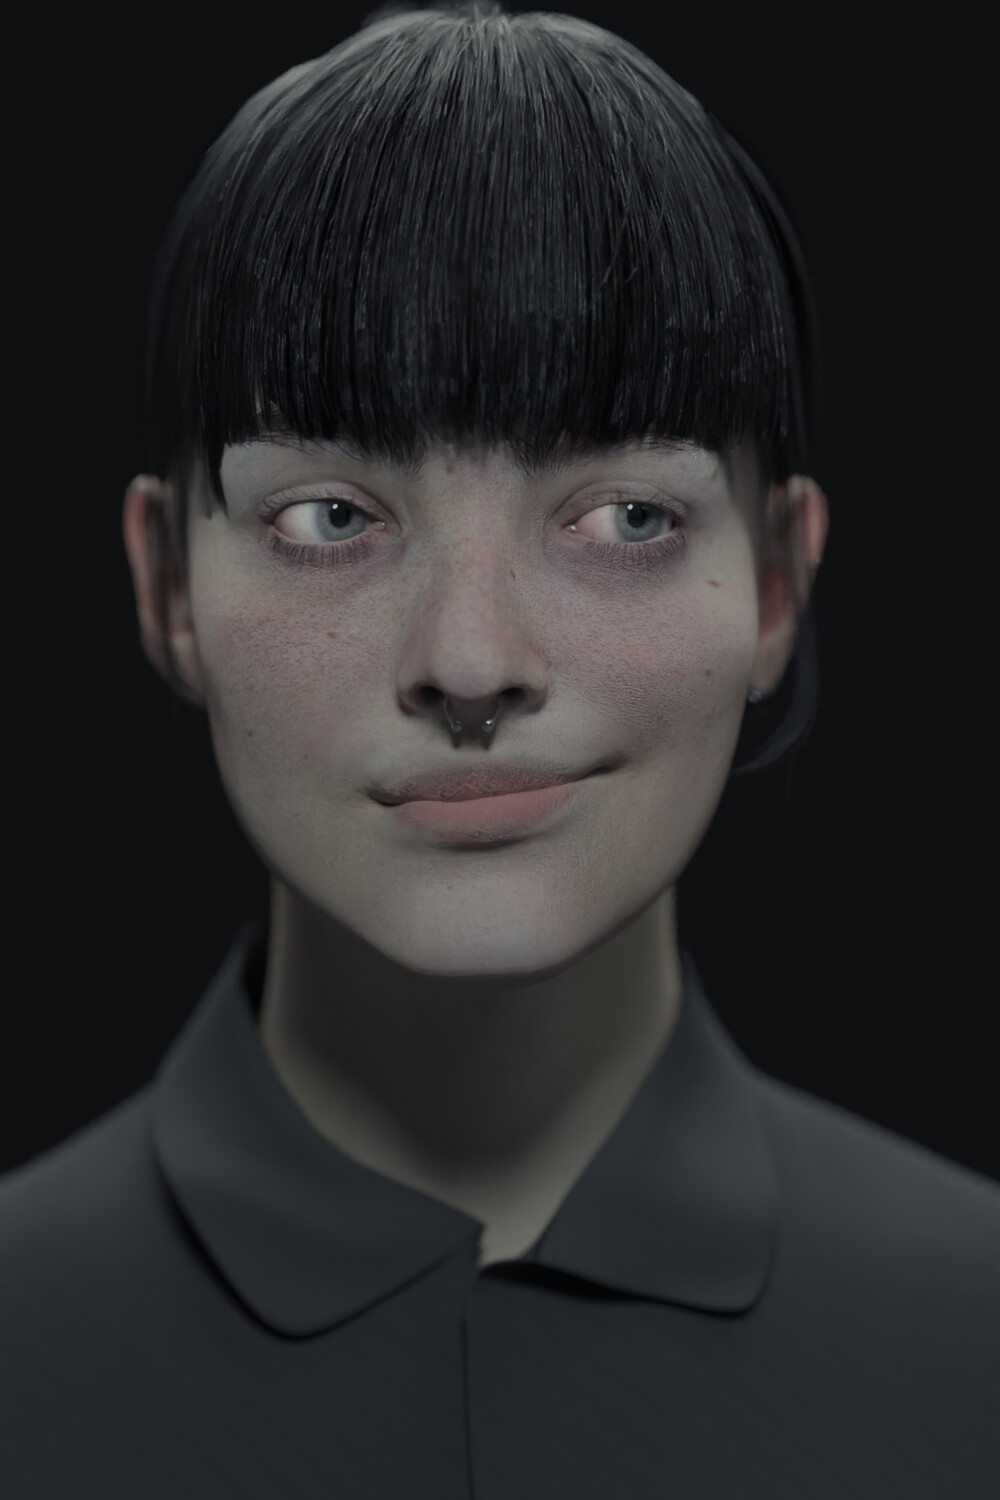 ArtStation - Girl Portrait Practice - Blender